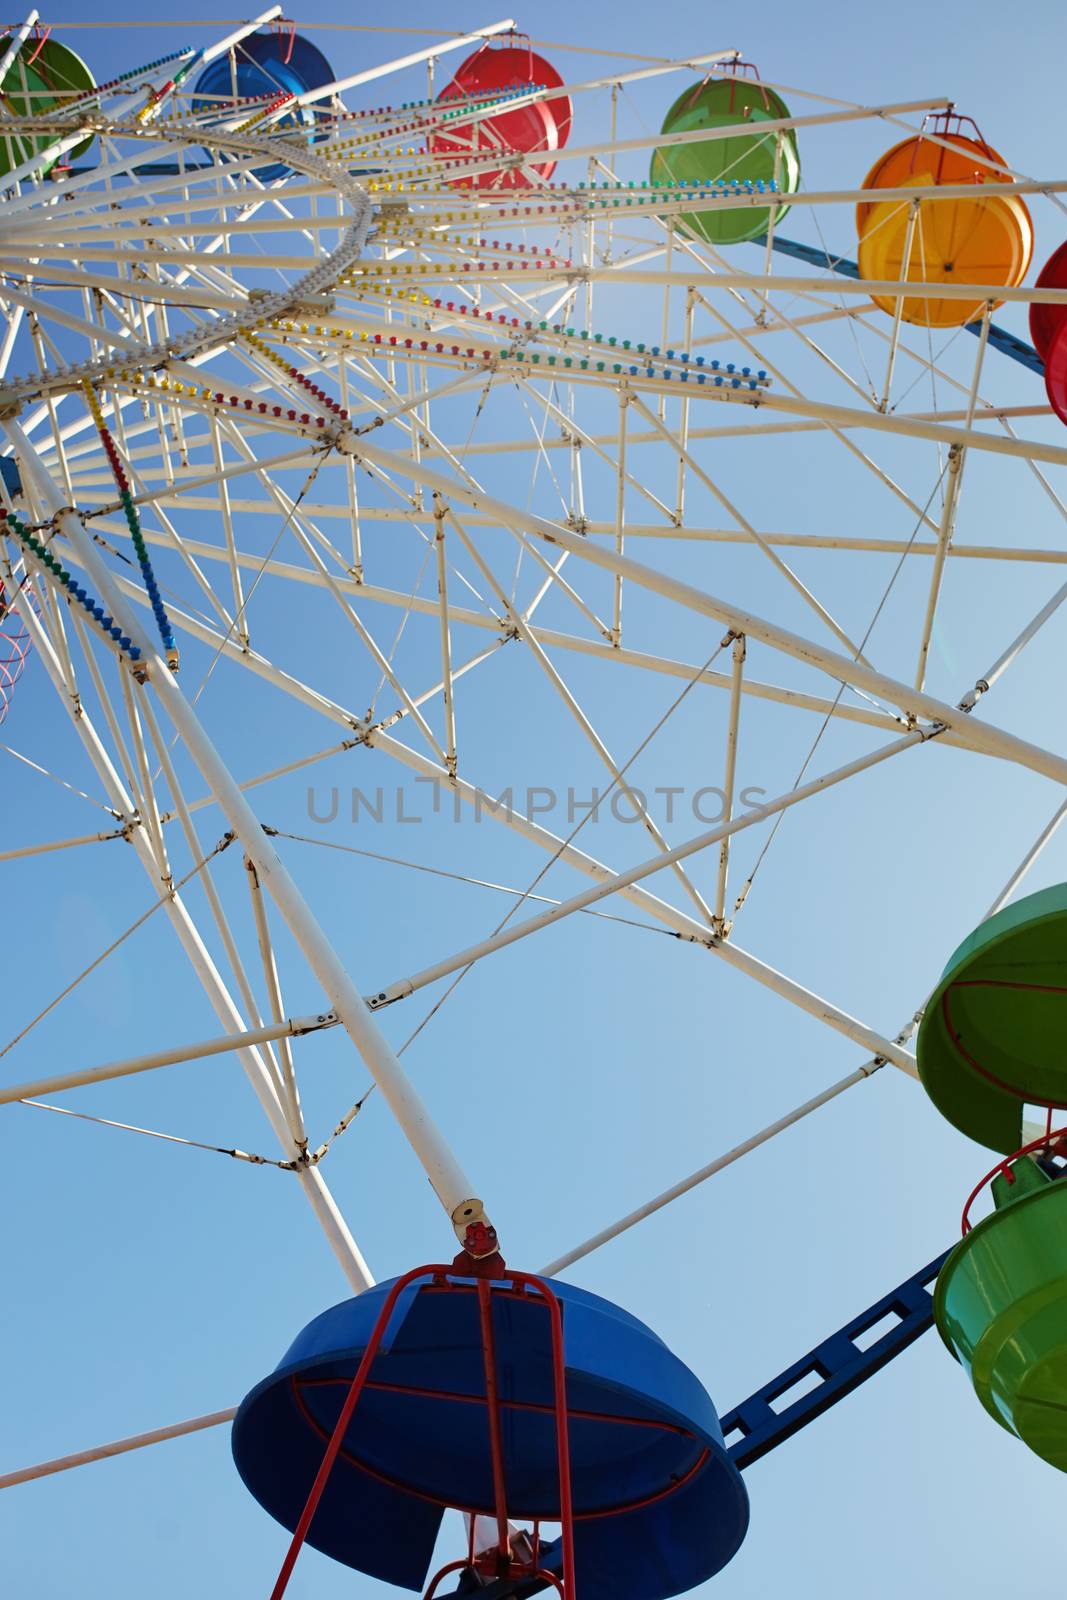 Ferris wheel in public amusement park. Low angle view